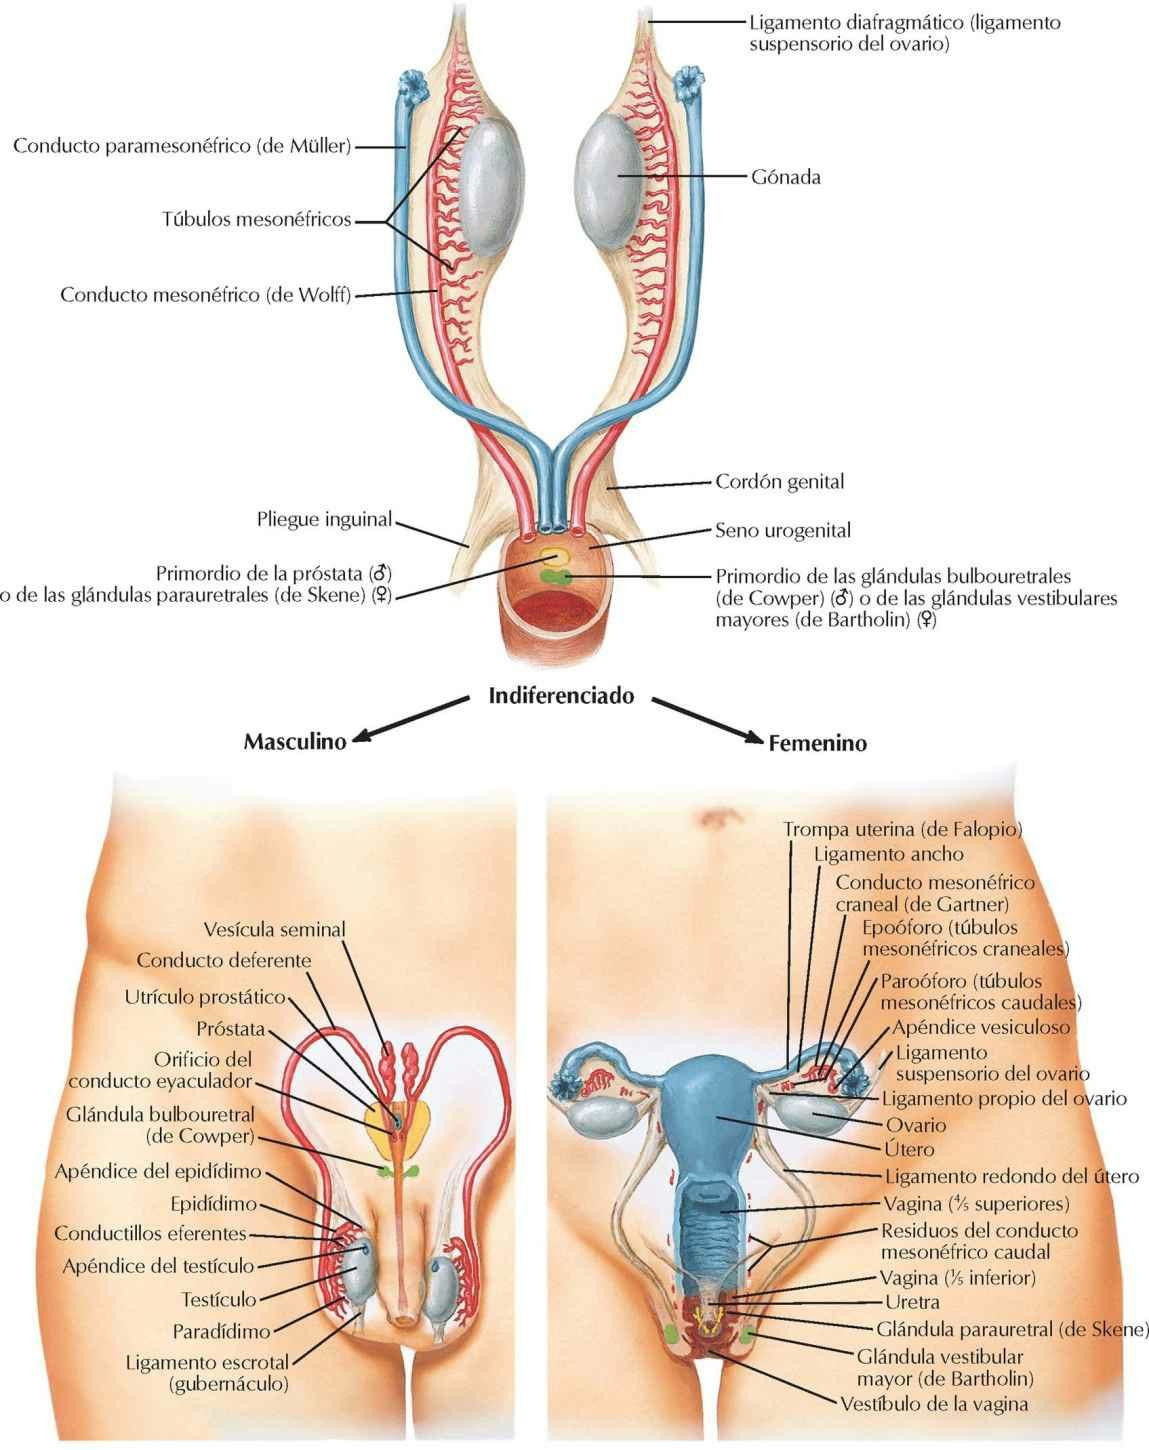 Estructuras homólogas de los genitales internos